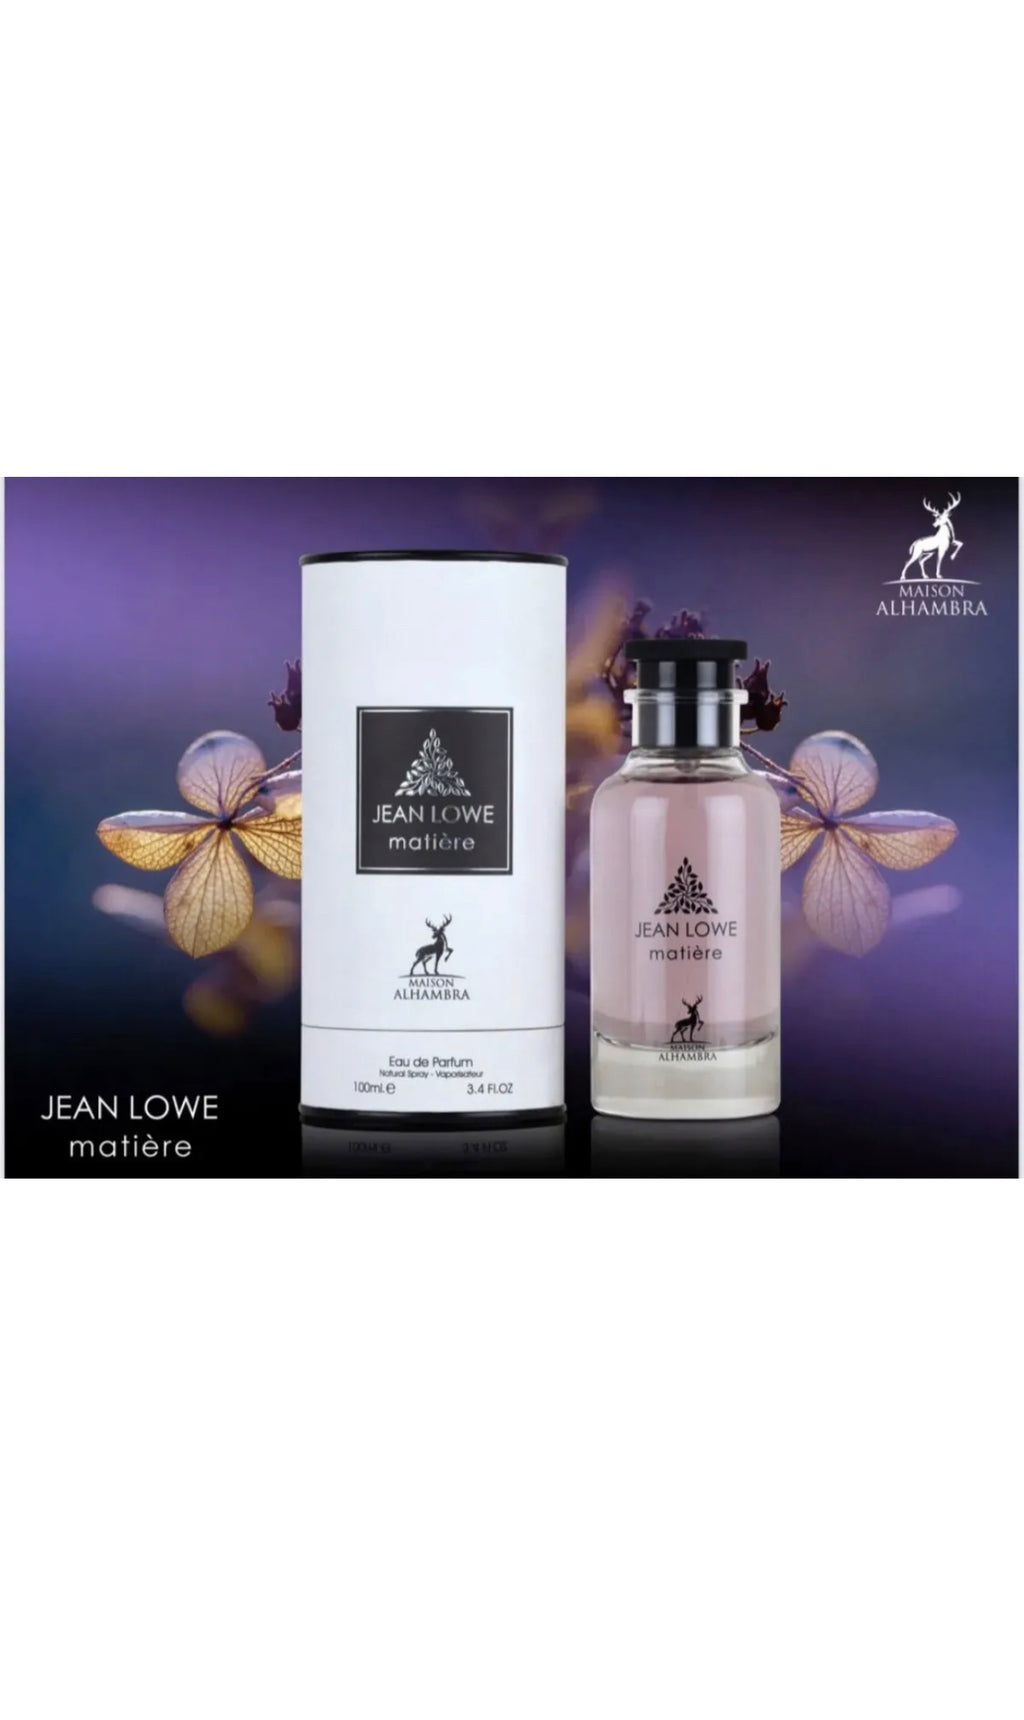 Jean Lowe Matiere | Eau De Perfume 100ml | By Maison Alhambra